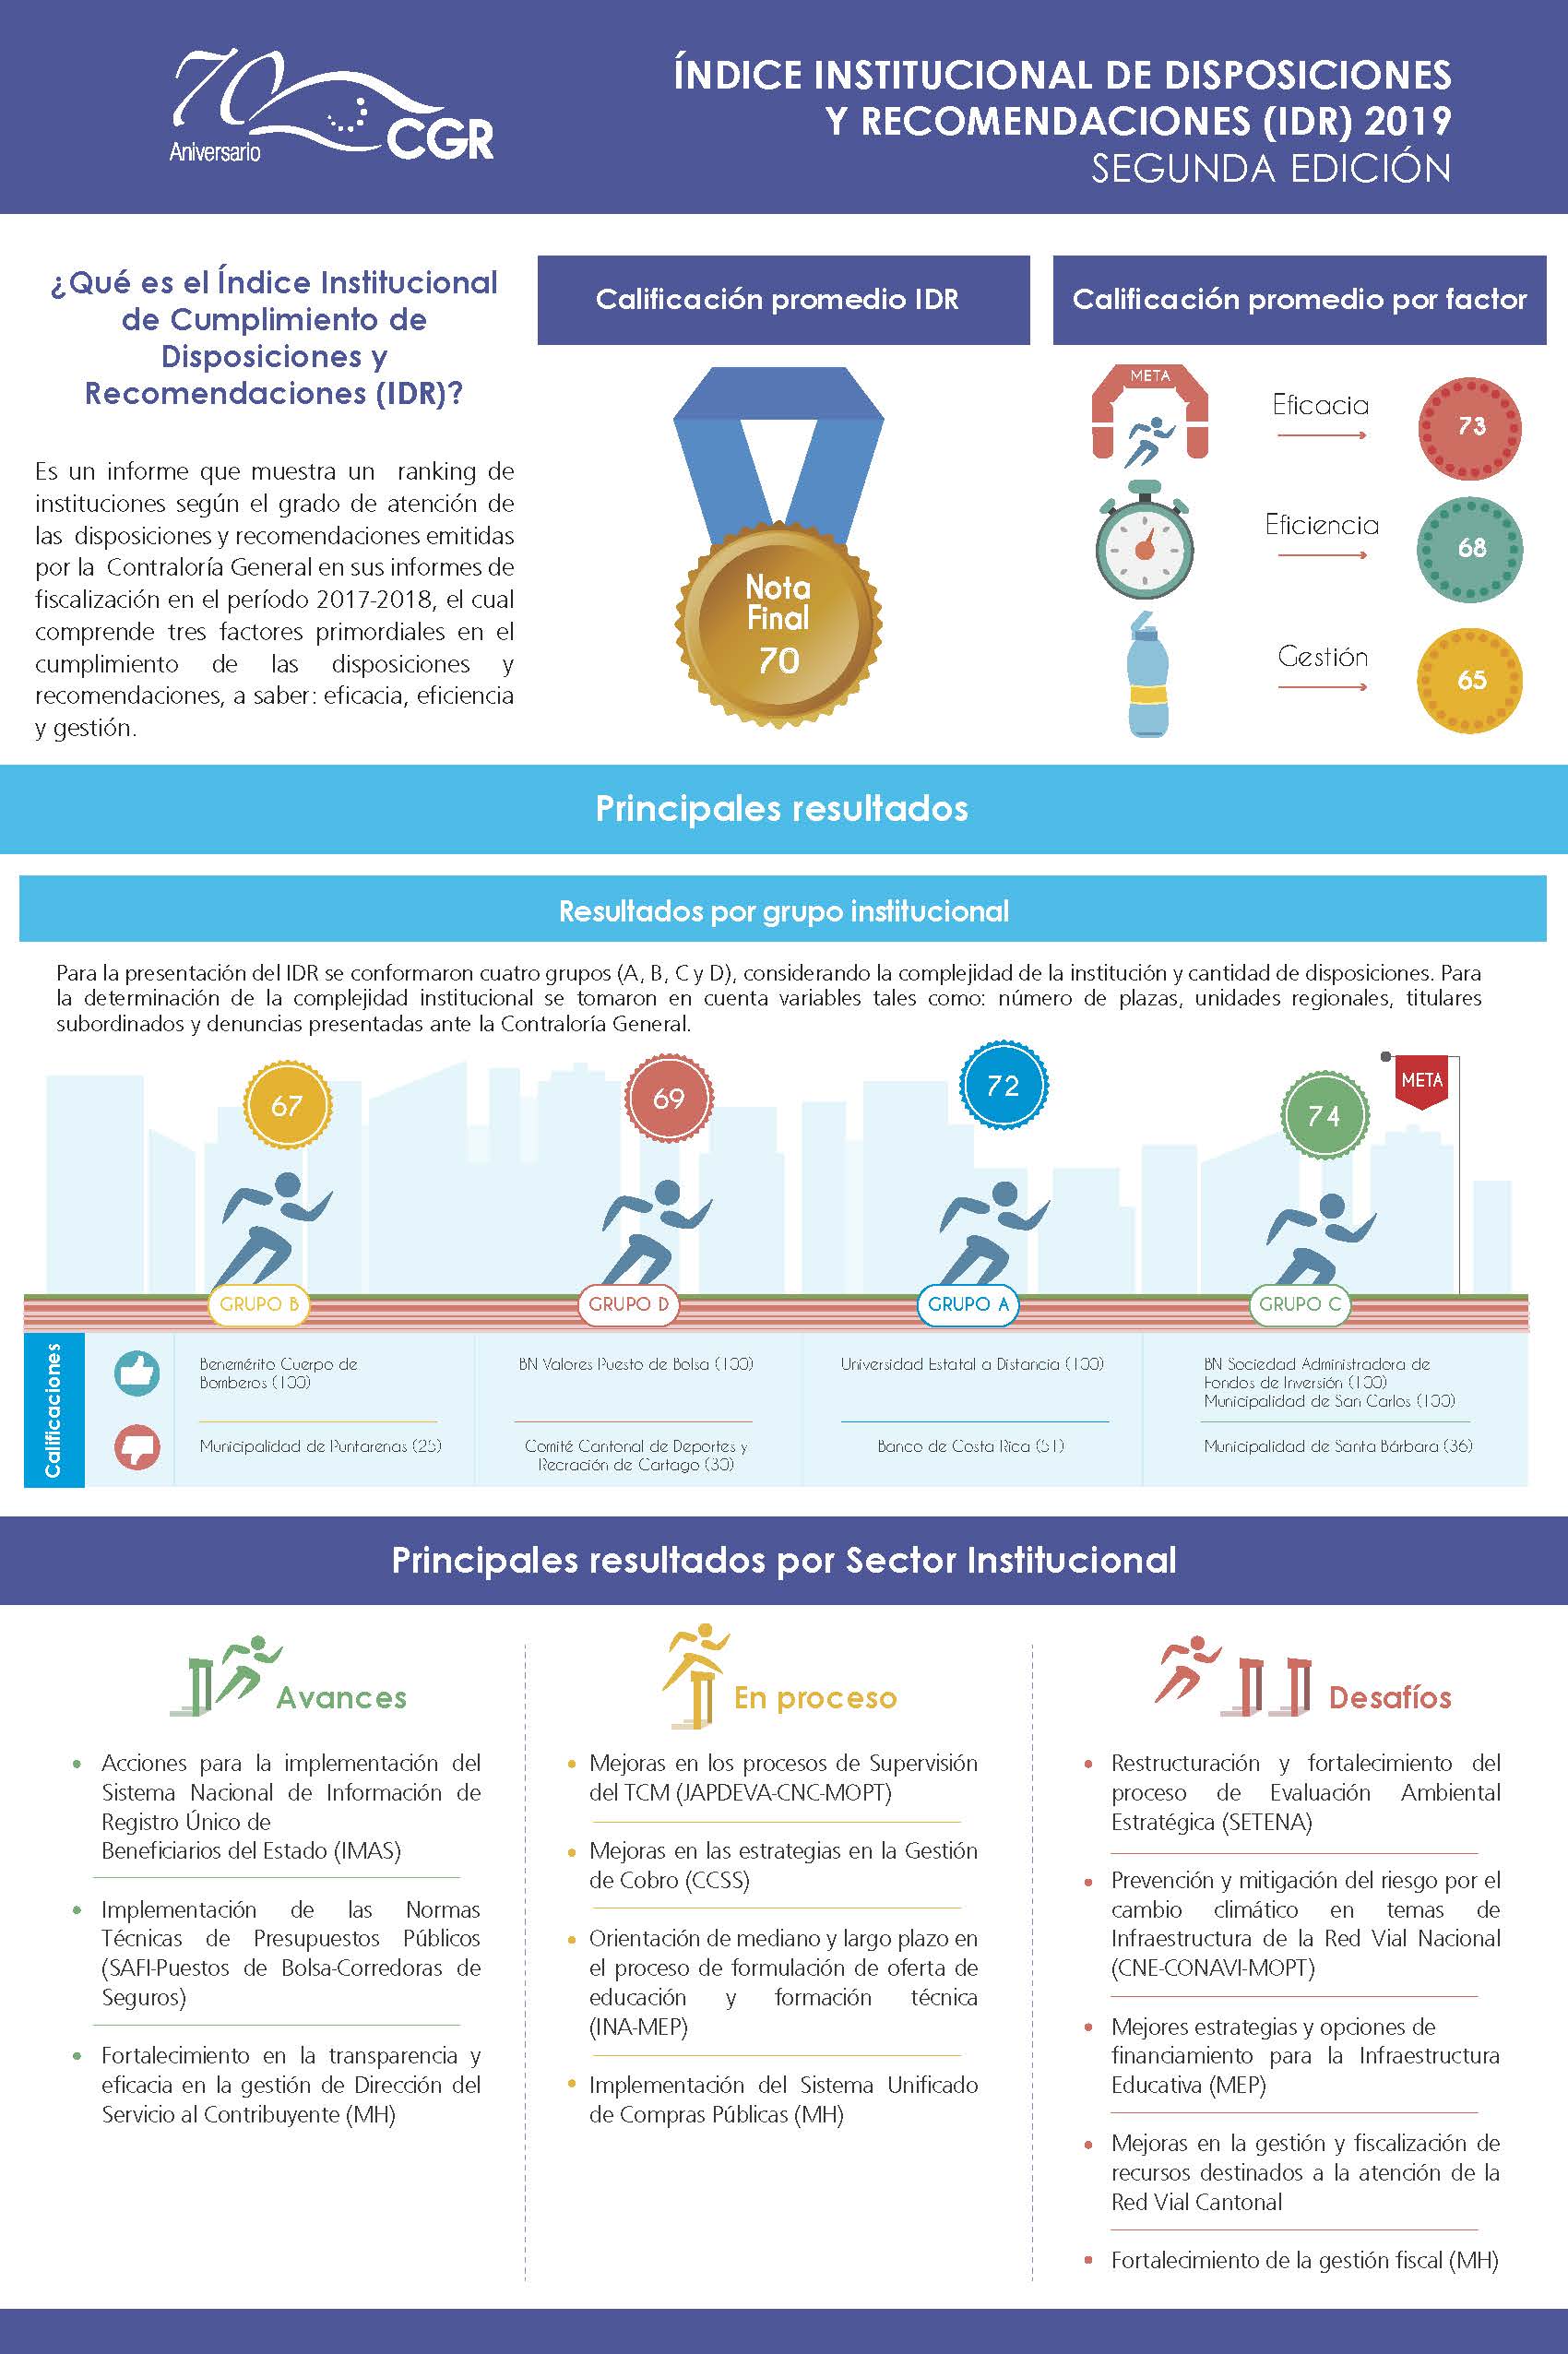 Índice Institucional de Disposiciones y Recomendaciones 2019 - Infografía